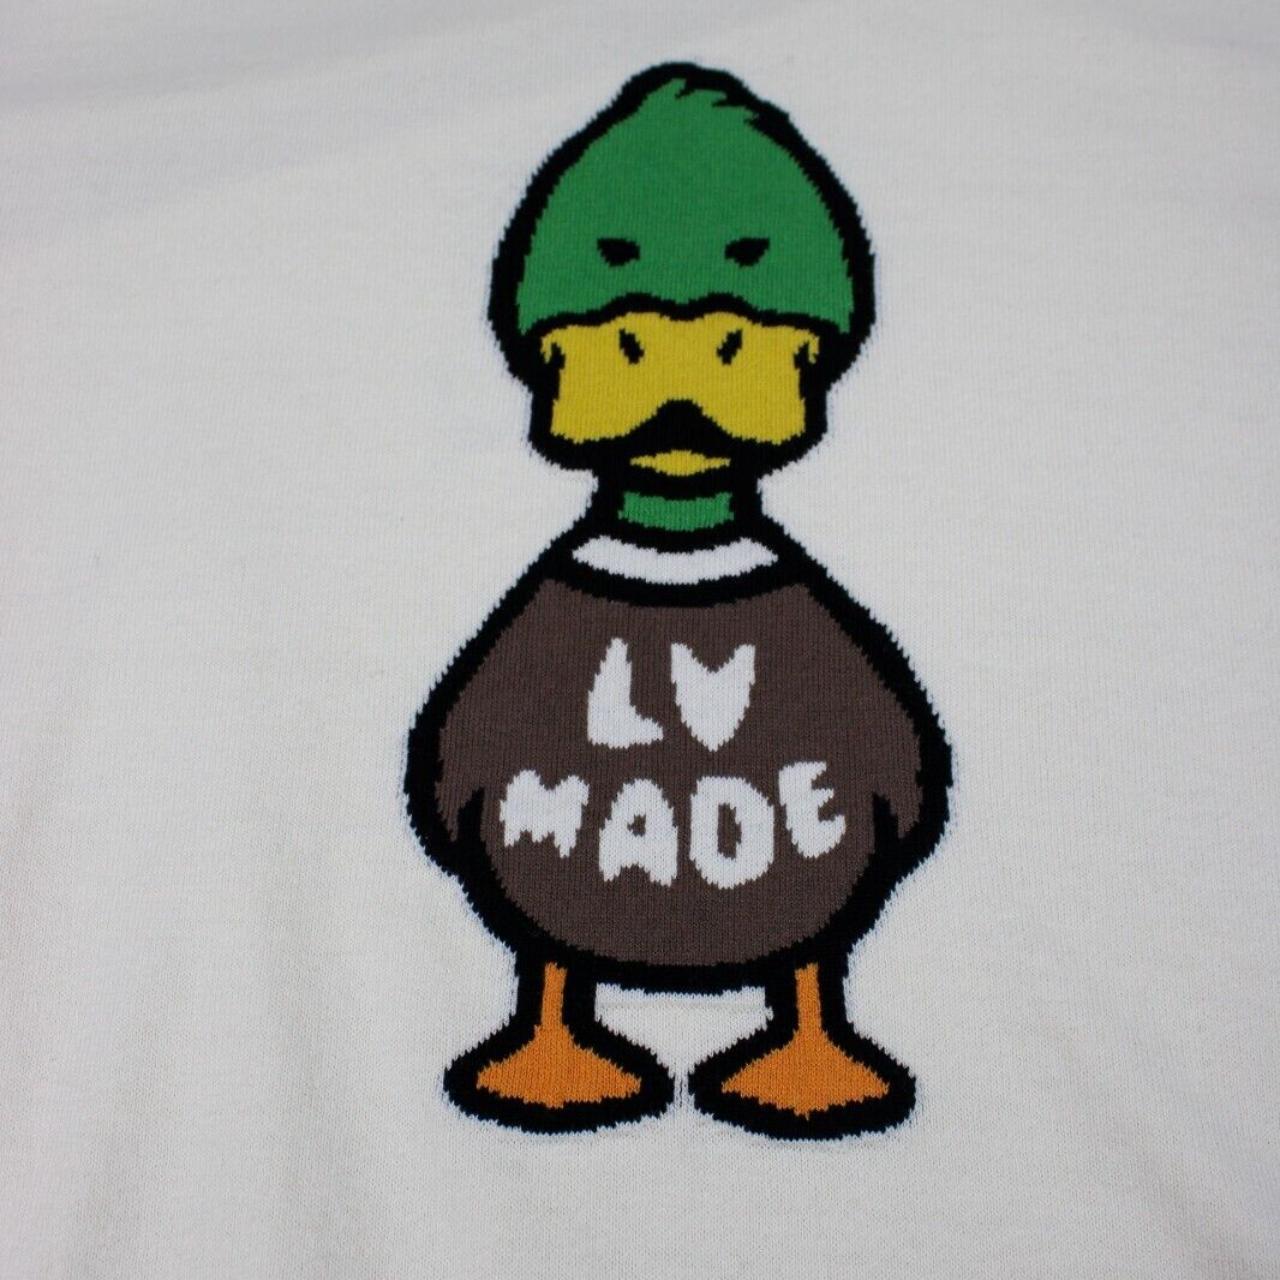 t shirt lv made duck